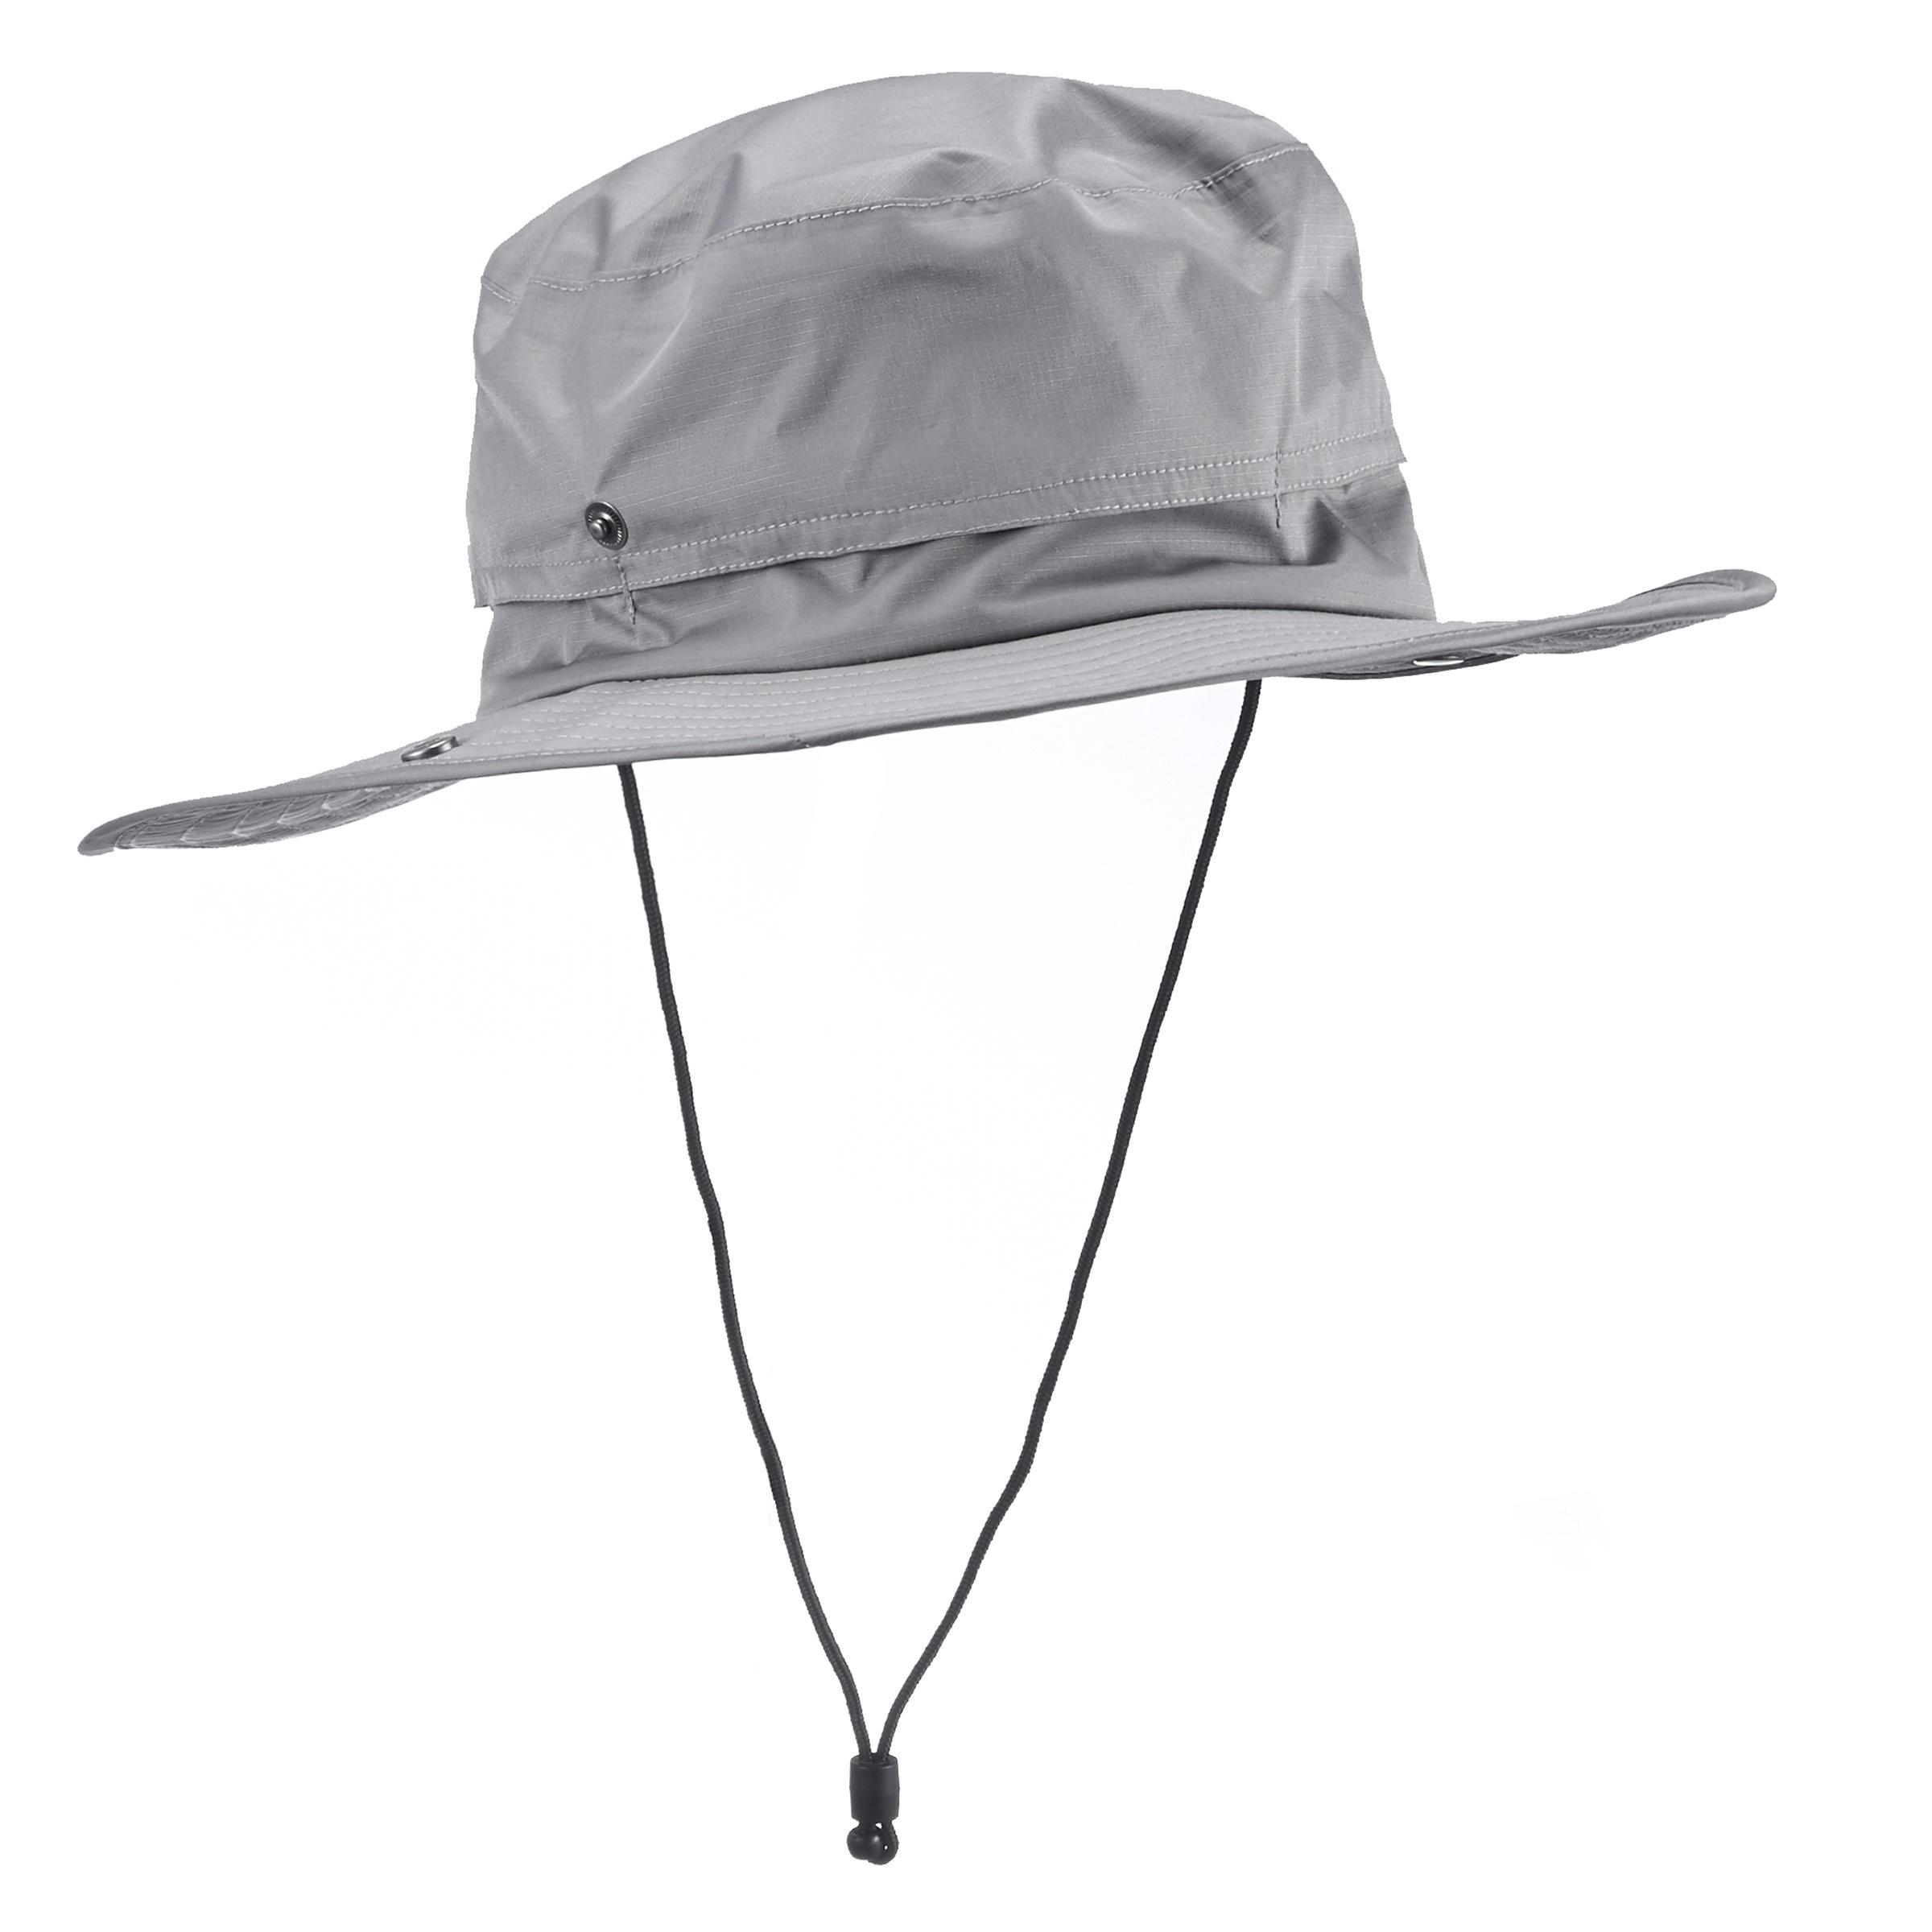 หมวกสำหรับการเทรคกิ้งบนภูเขากันน้ำรุ่น TREK 900 (สีเทาอ่อน)